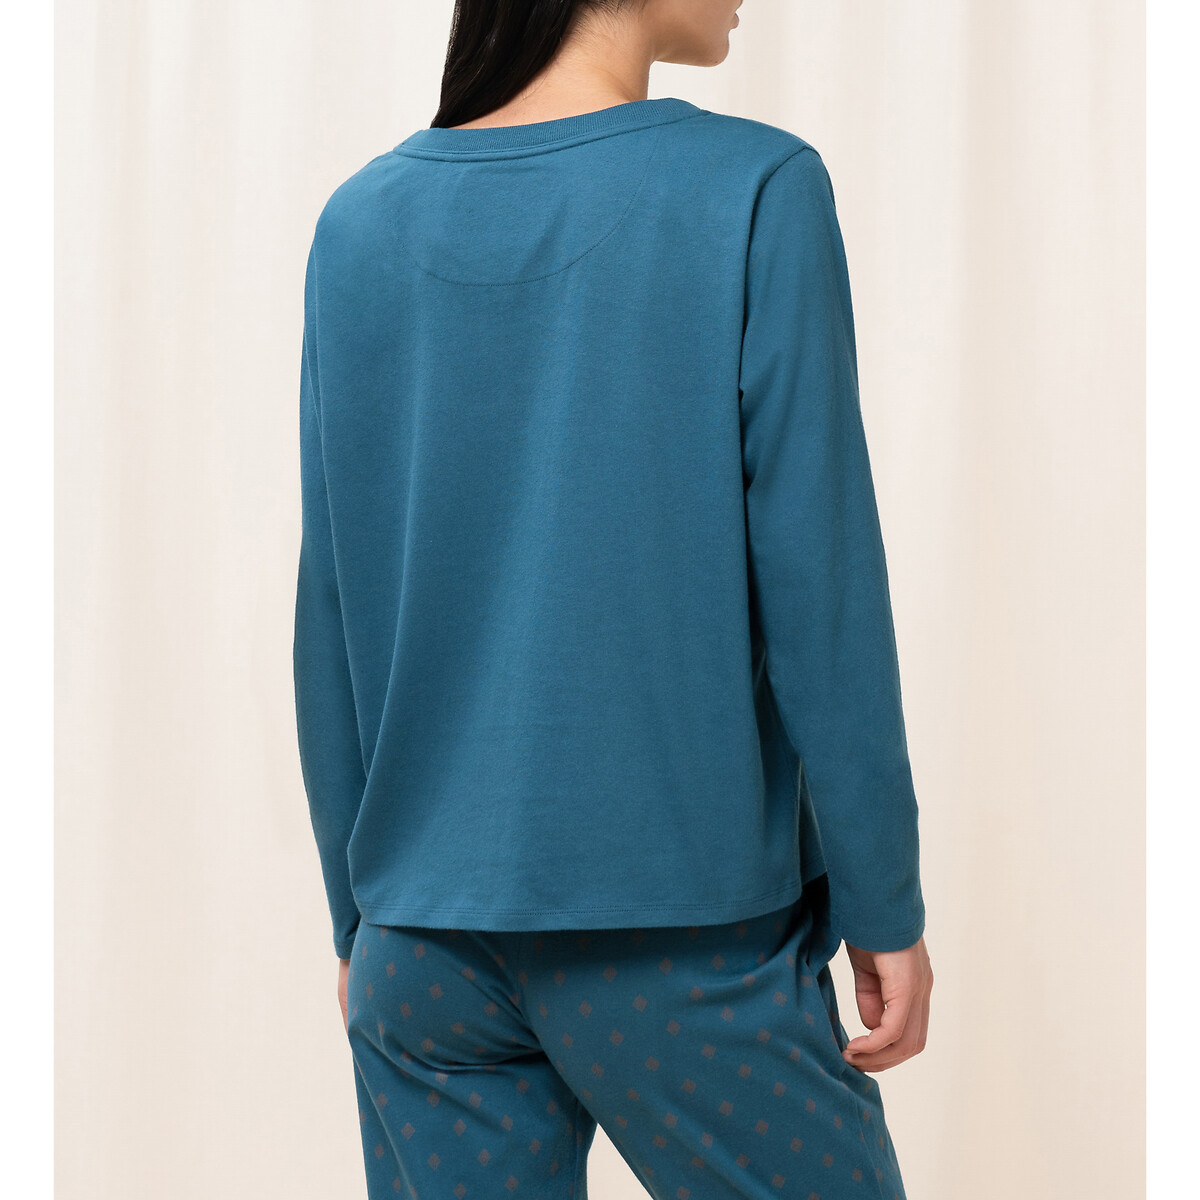 Верх от пижамы TRIUMPH Верх от пижамы Mix  Match 38 (FR) - 44 (RUS) синий, размер 38 (FR) - 44 (RUS) Верх от пижамы Mix  Match 38 (FR) - 44 (RUS) синий - фото 2